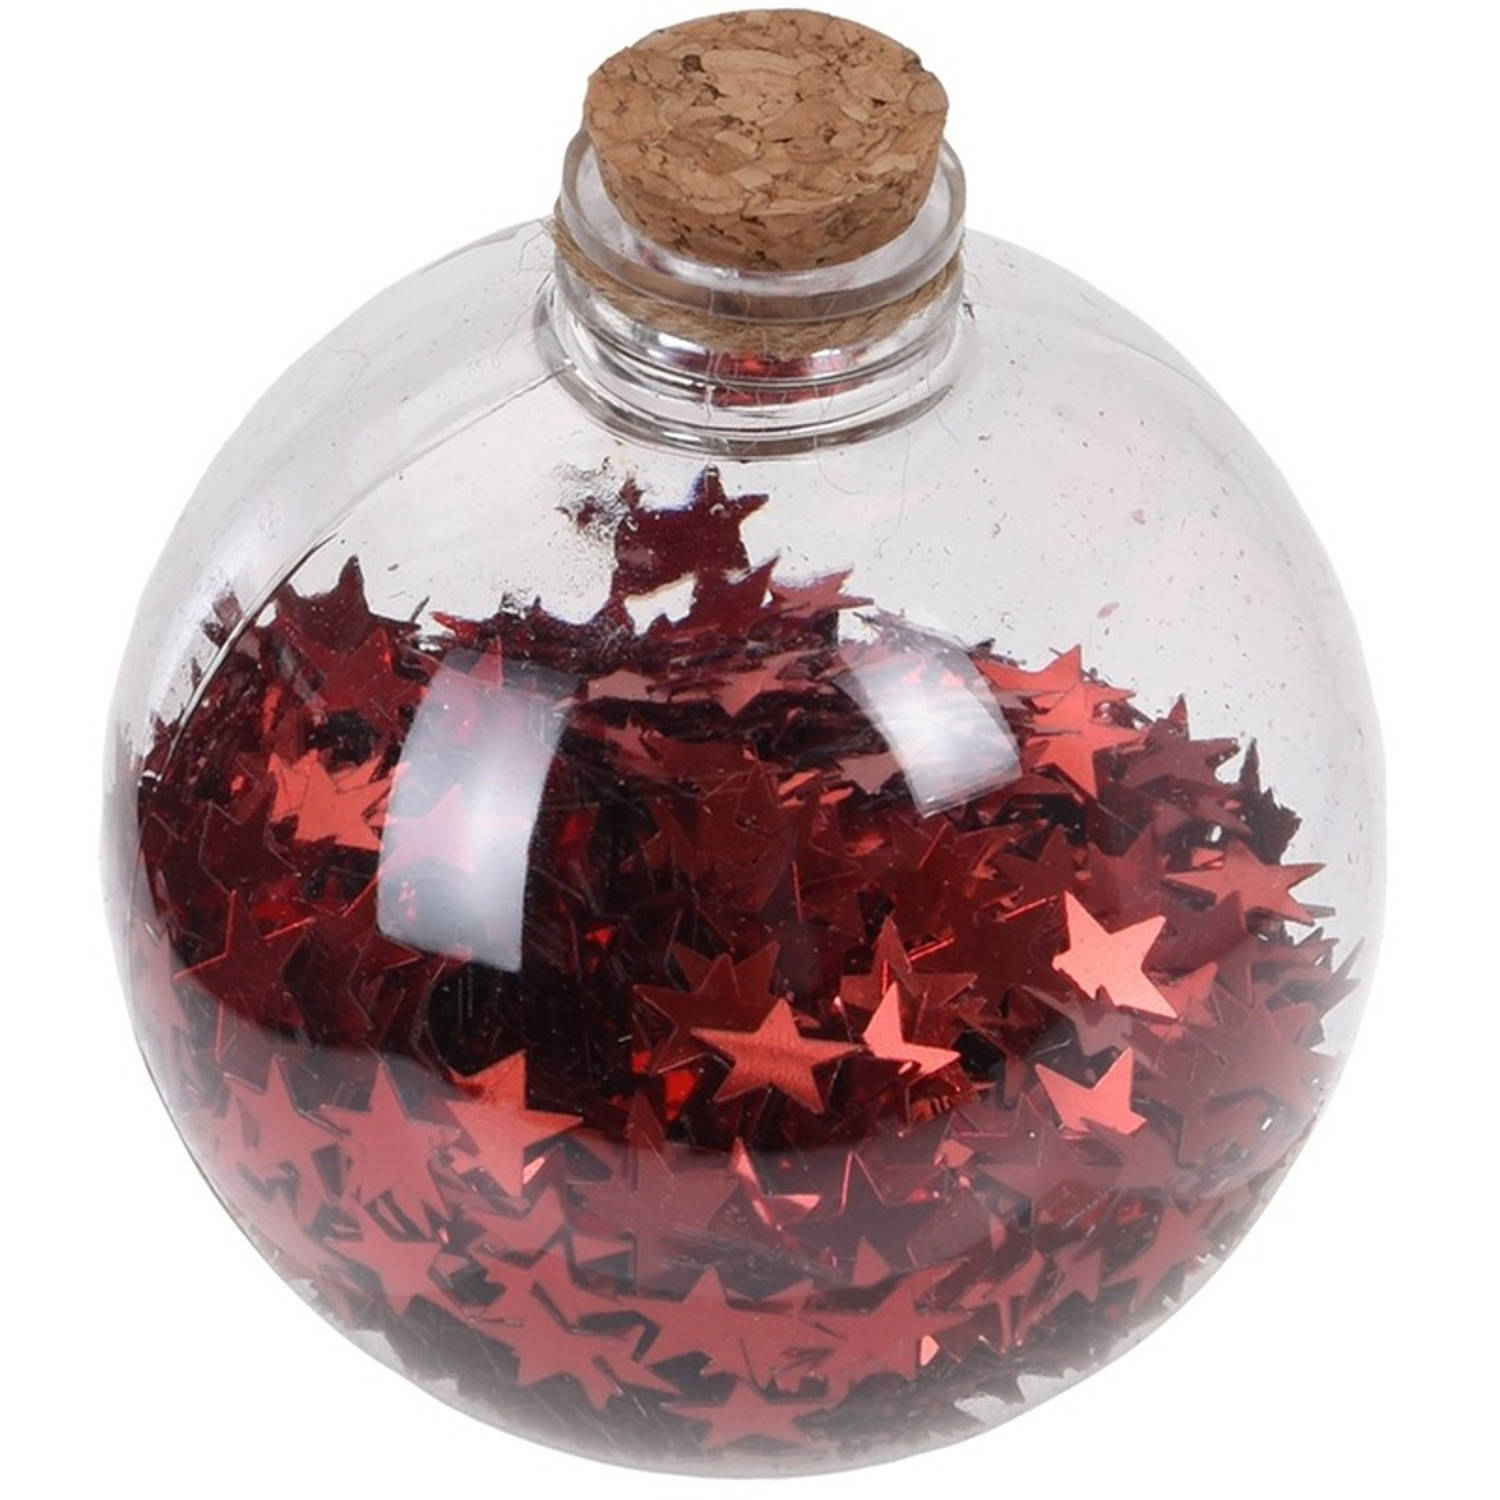 1x Kerstballen transparant/rood 8 cm met rode sterren kunststof kerstboom versiering/decoratie - Kerstbal